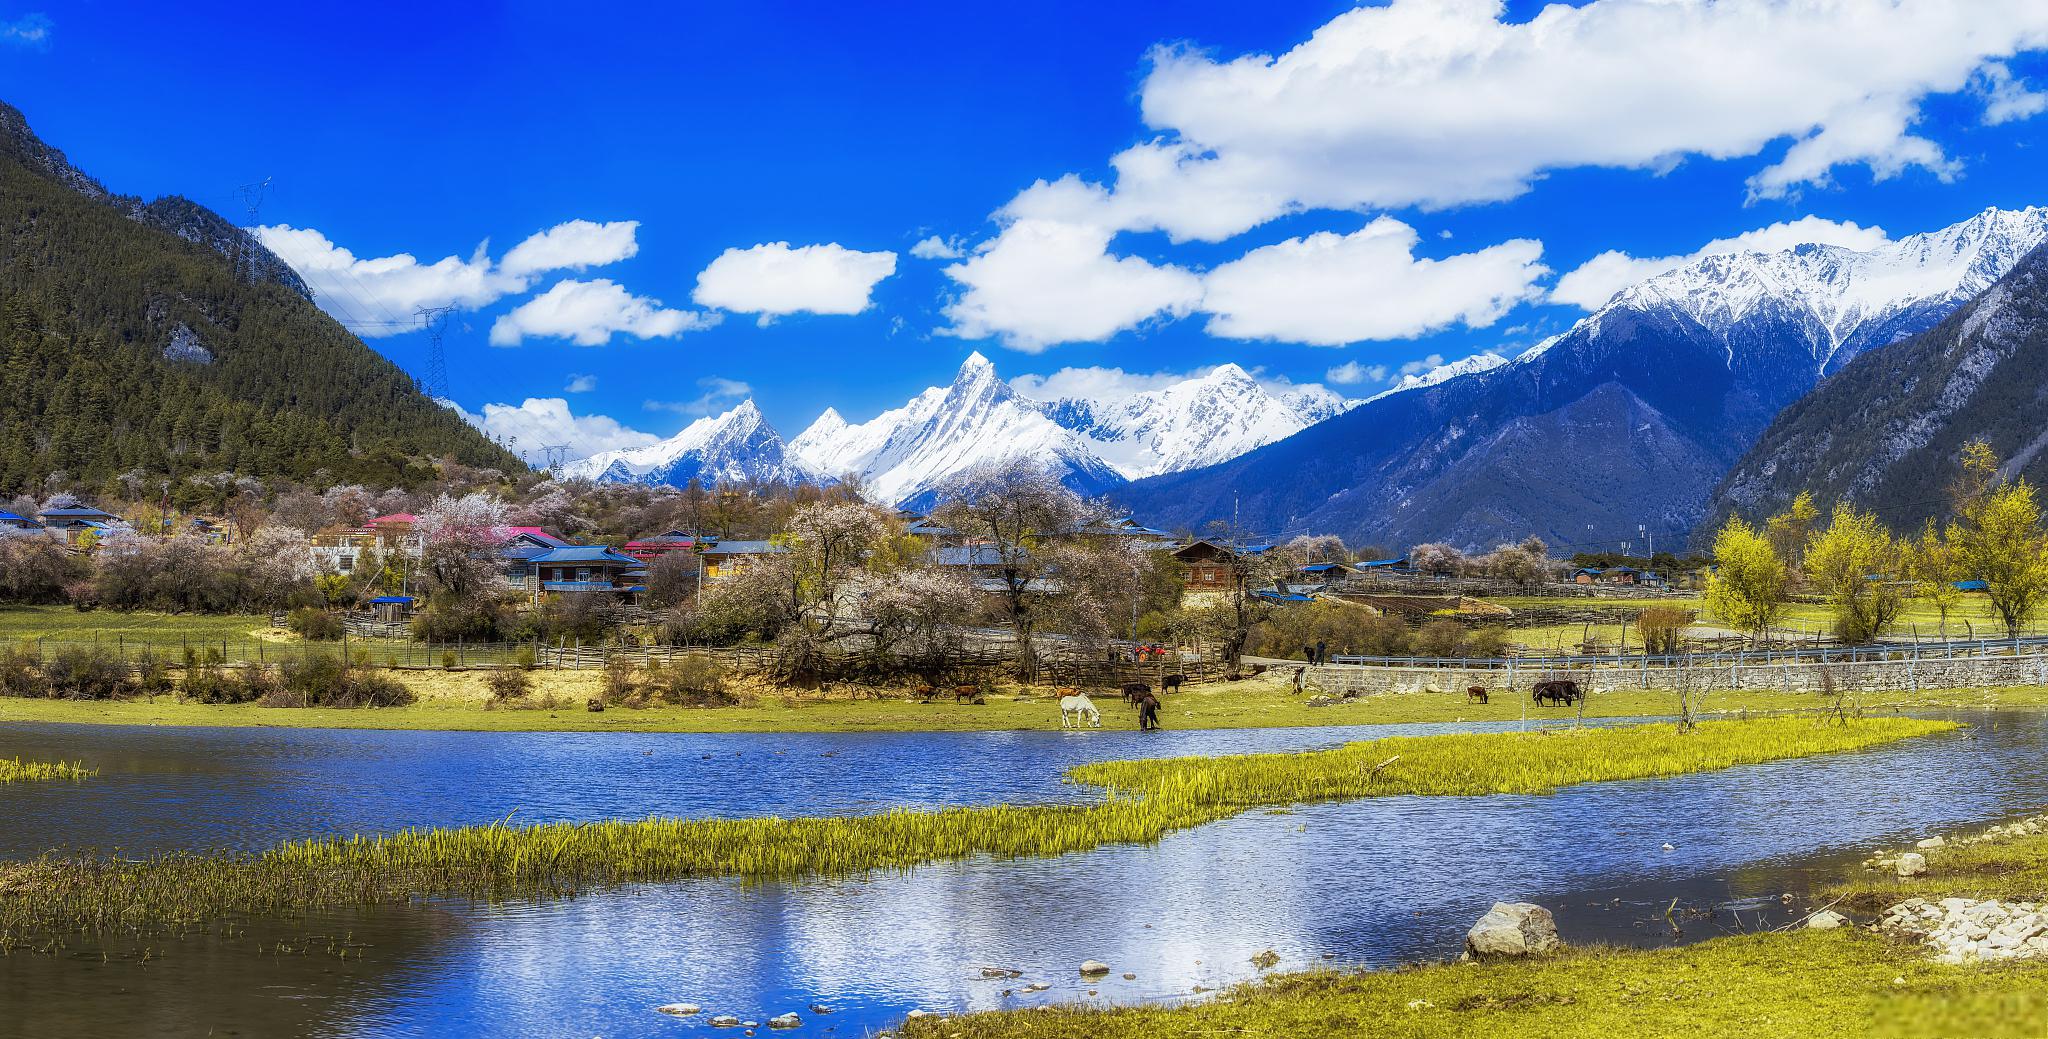 措普沟——康巴第一圣湖 措普沟地处甘孜藏族自治州的巴塘县北部,属于